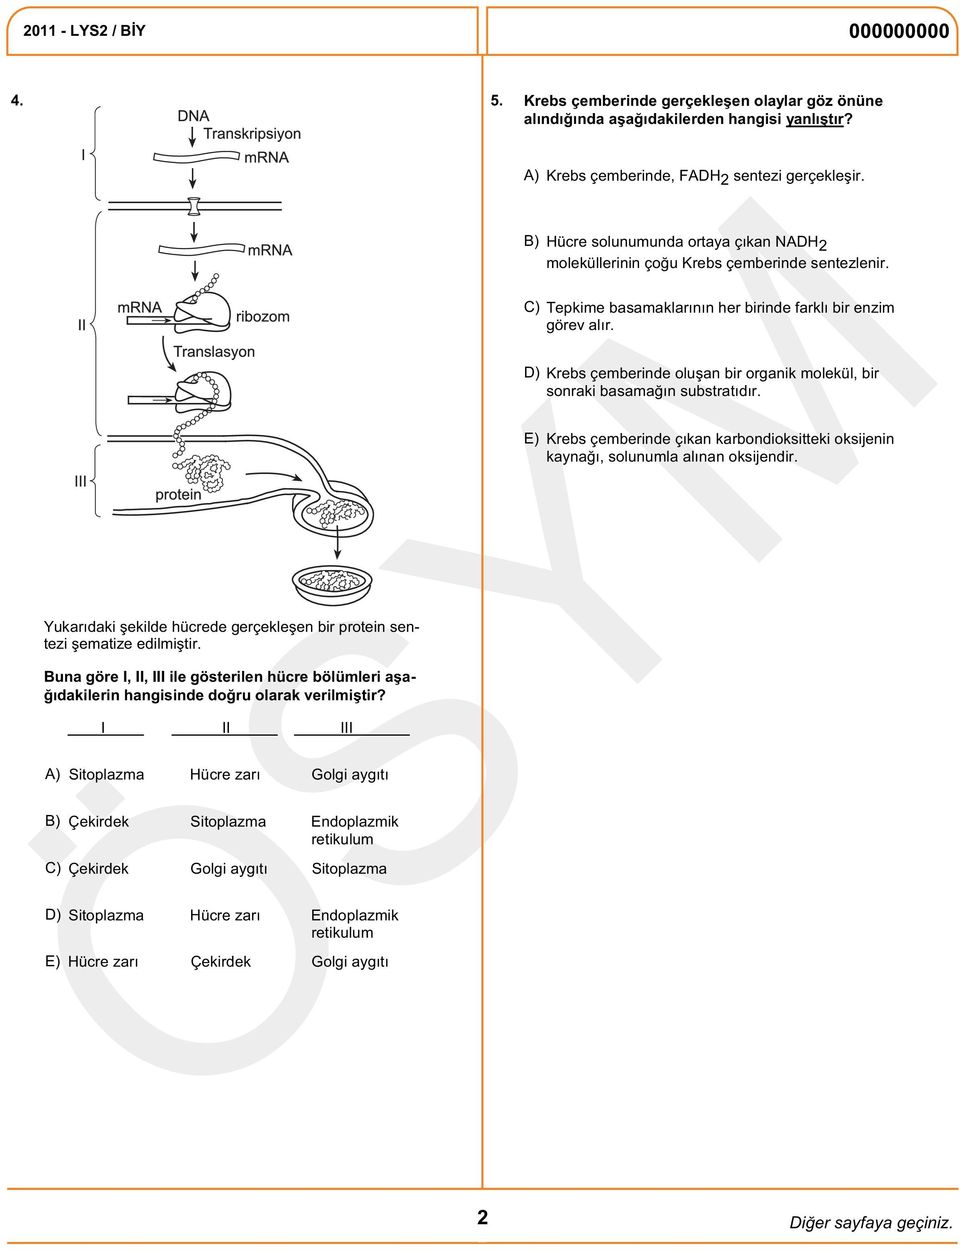 A) B) I II III C) Çekirdek Golgi aygıtı Sitoplazma D) Sitoplazma Hücre zarı Endoplazmik retikulum E) Sitoplazma Hücre zarı Golgi aygıtı Çekirdek Sitoplazma Endoplazmik retikulum Hücre zarı Çekirdek